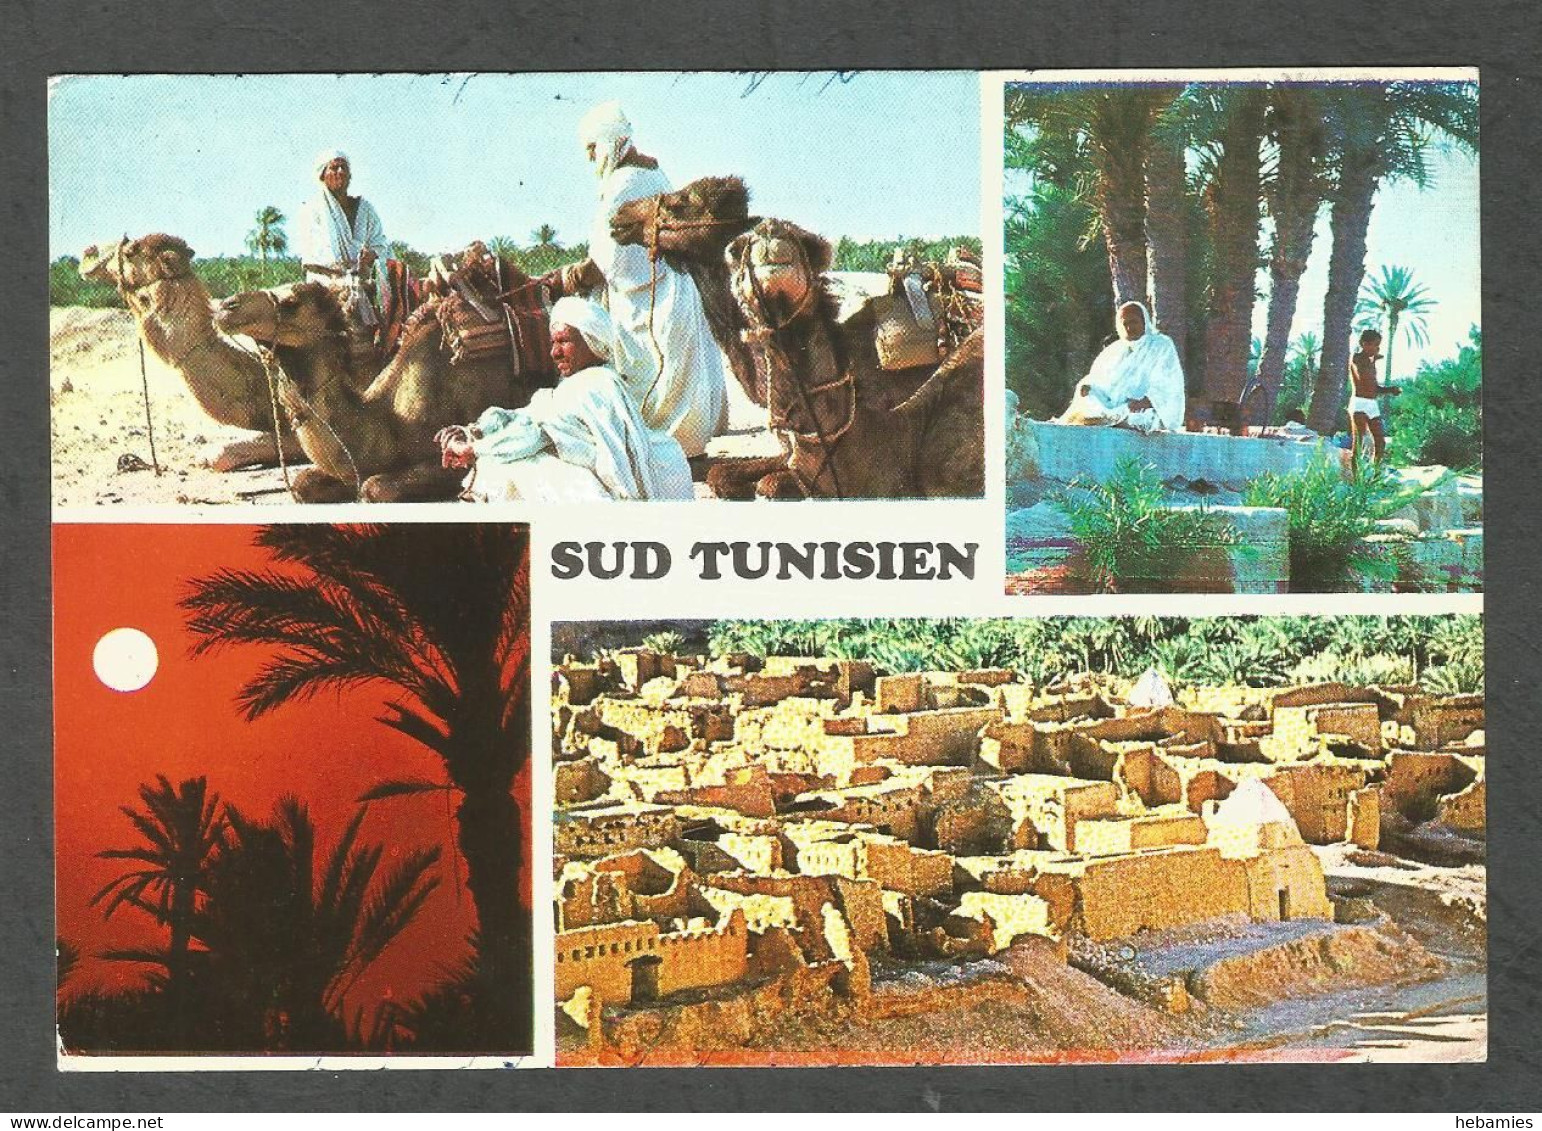 SUD TUNISIEN - SOUTH TUNISIA - TUNISIA - - Tunisie